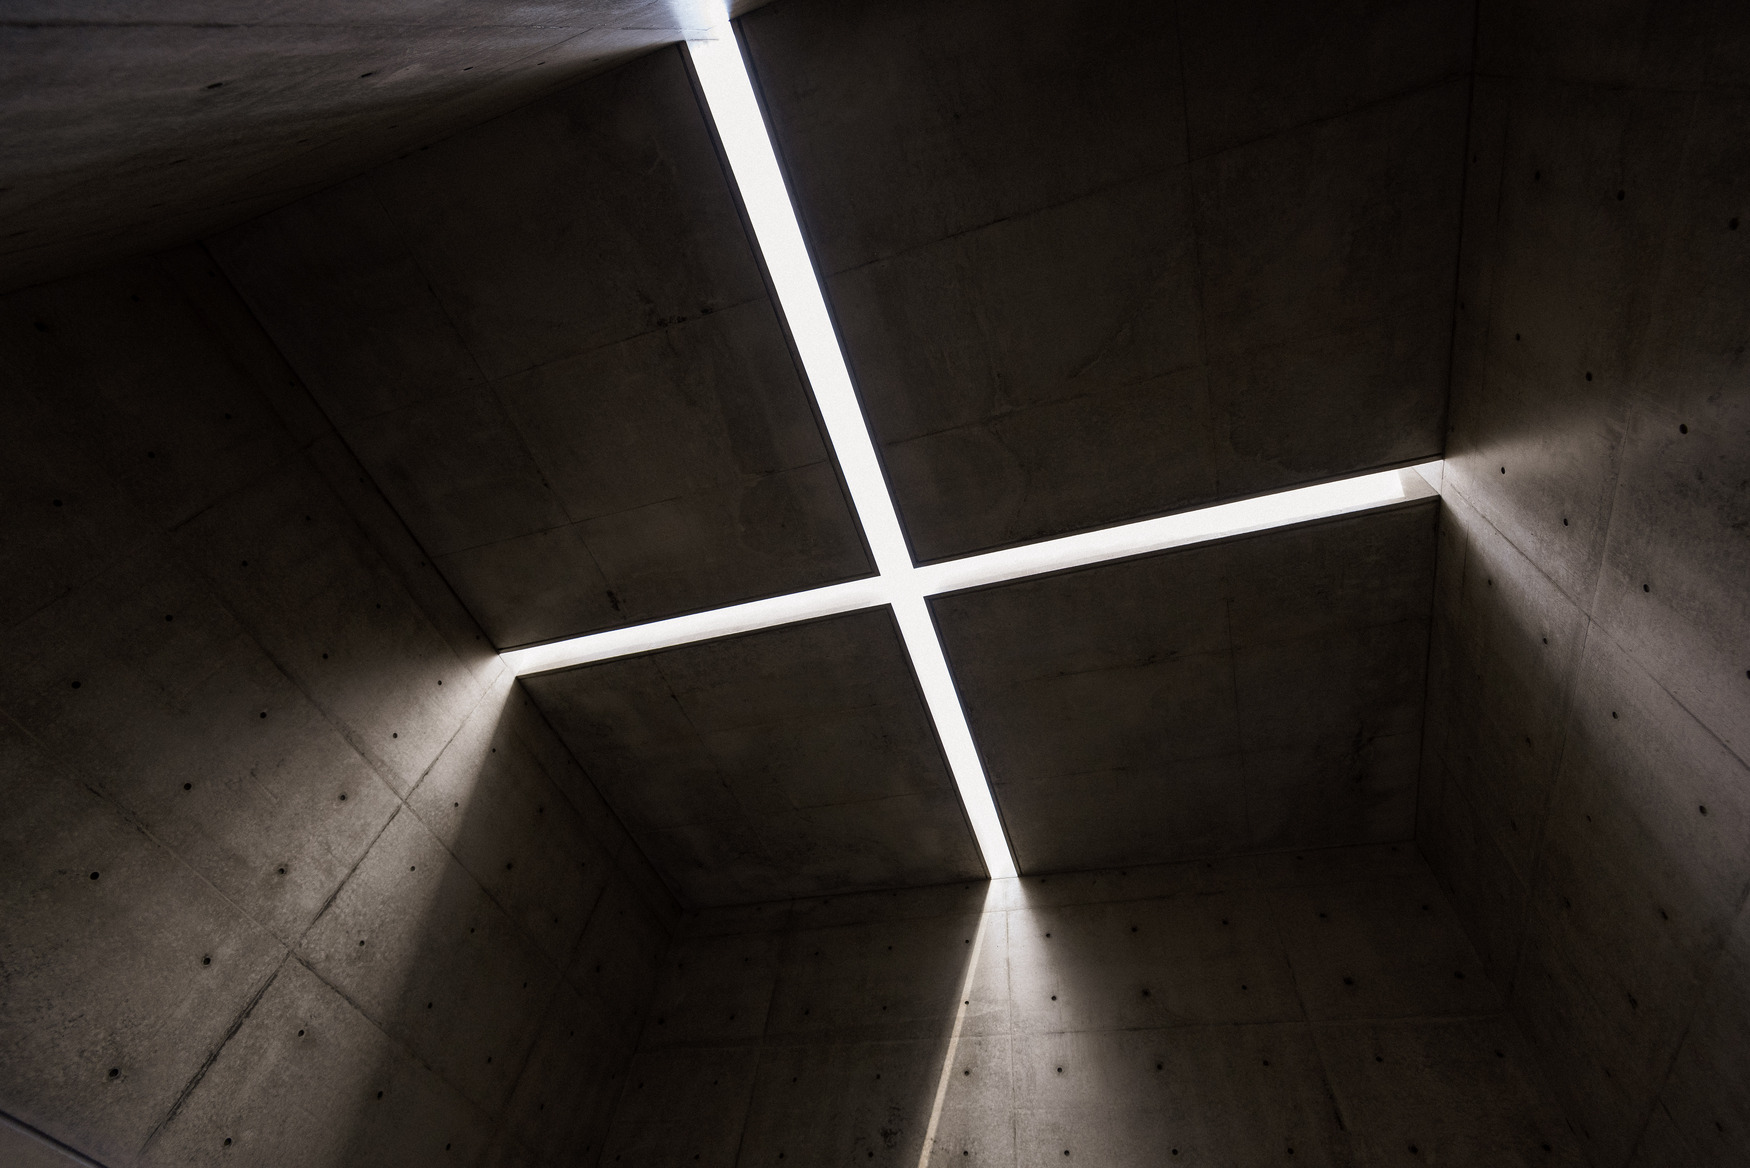 以纯粹的清水模空间承接十字天光的 Space of Light，是安藤忠雄在韩国的最新作品。